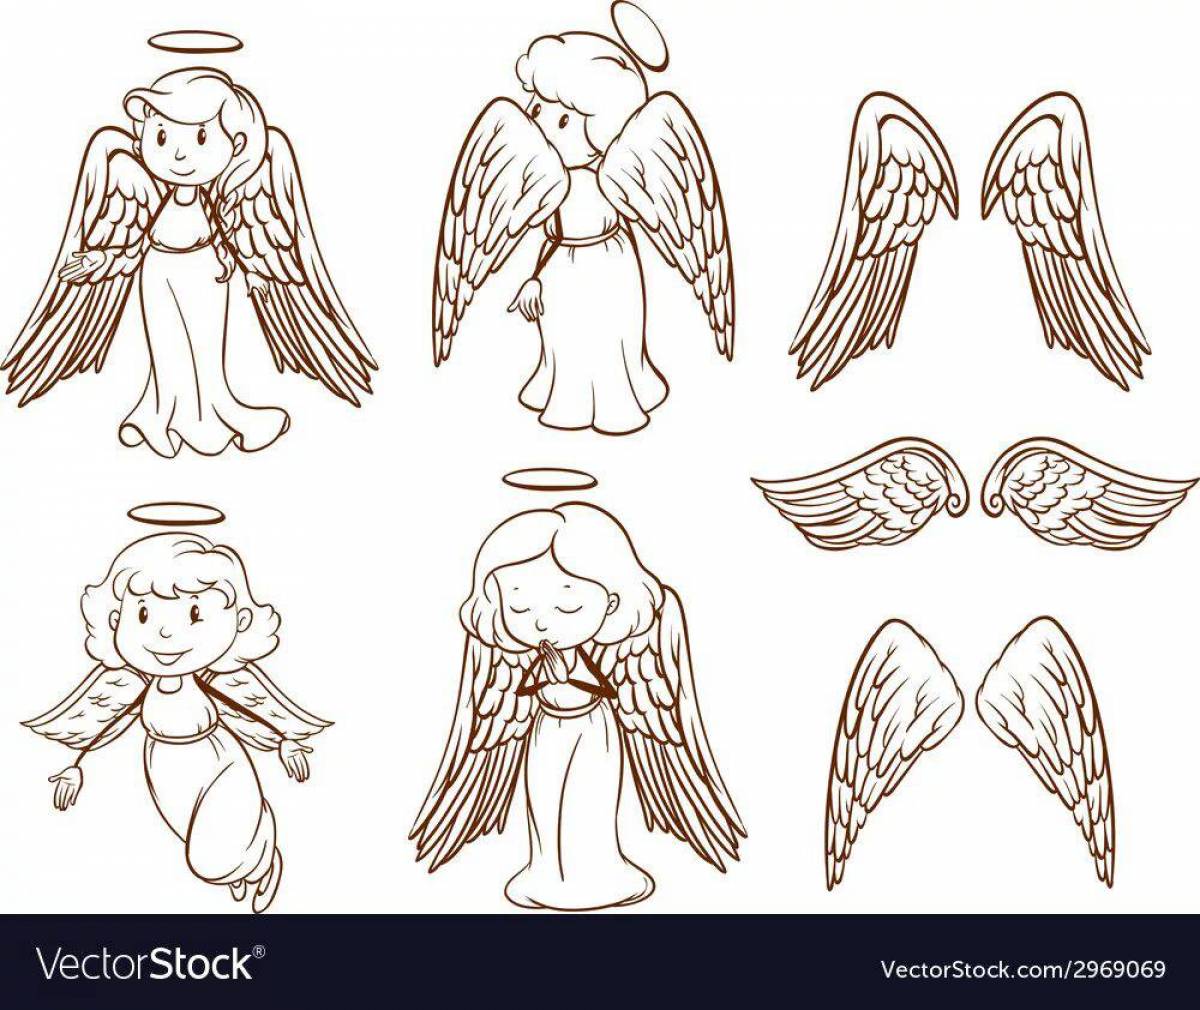 Ангела с крыльями для детей #35